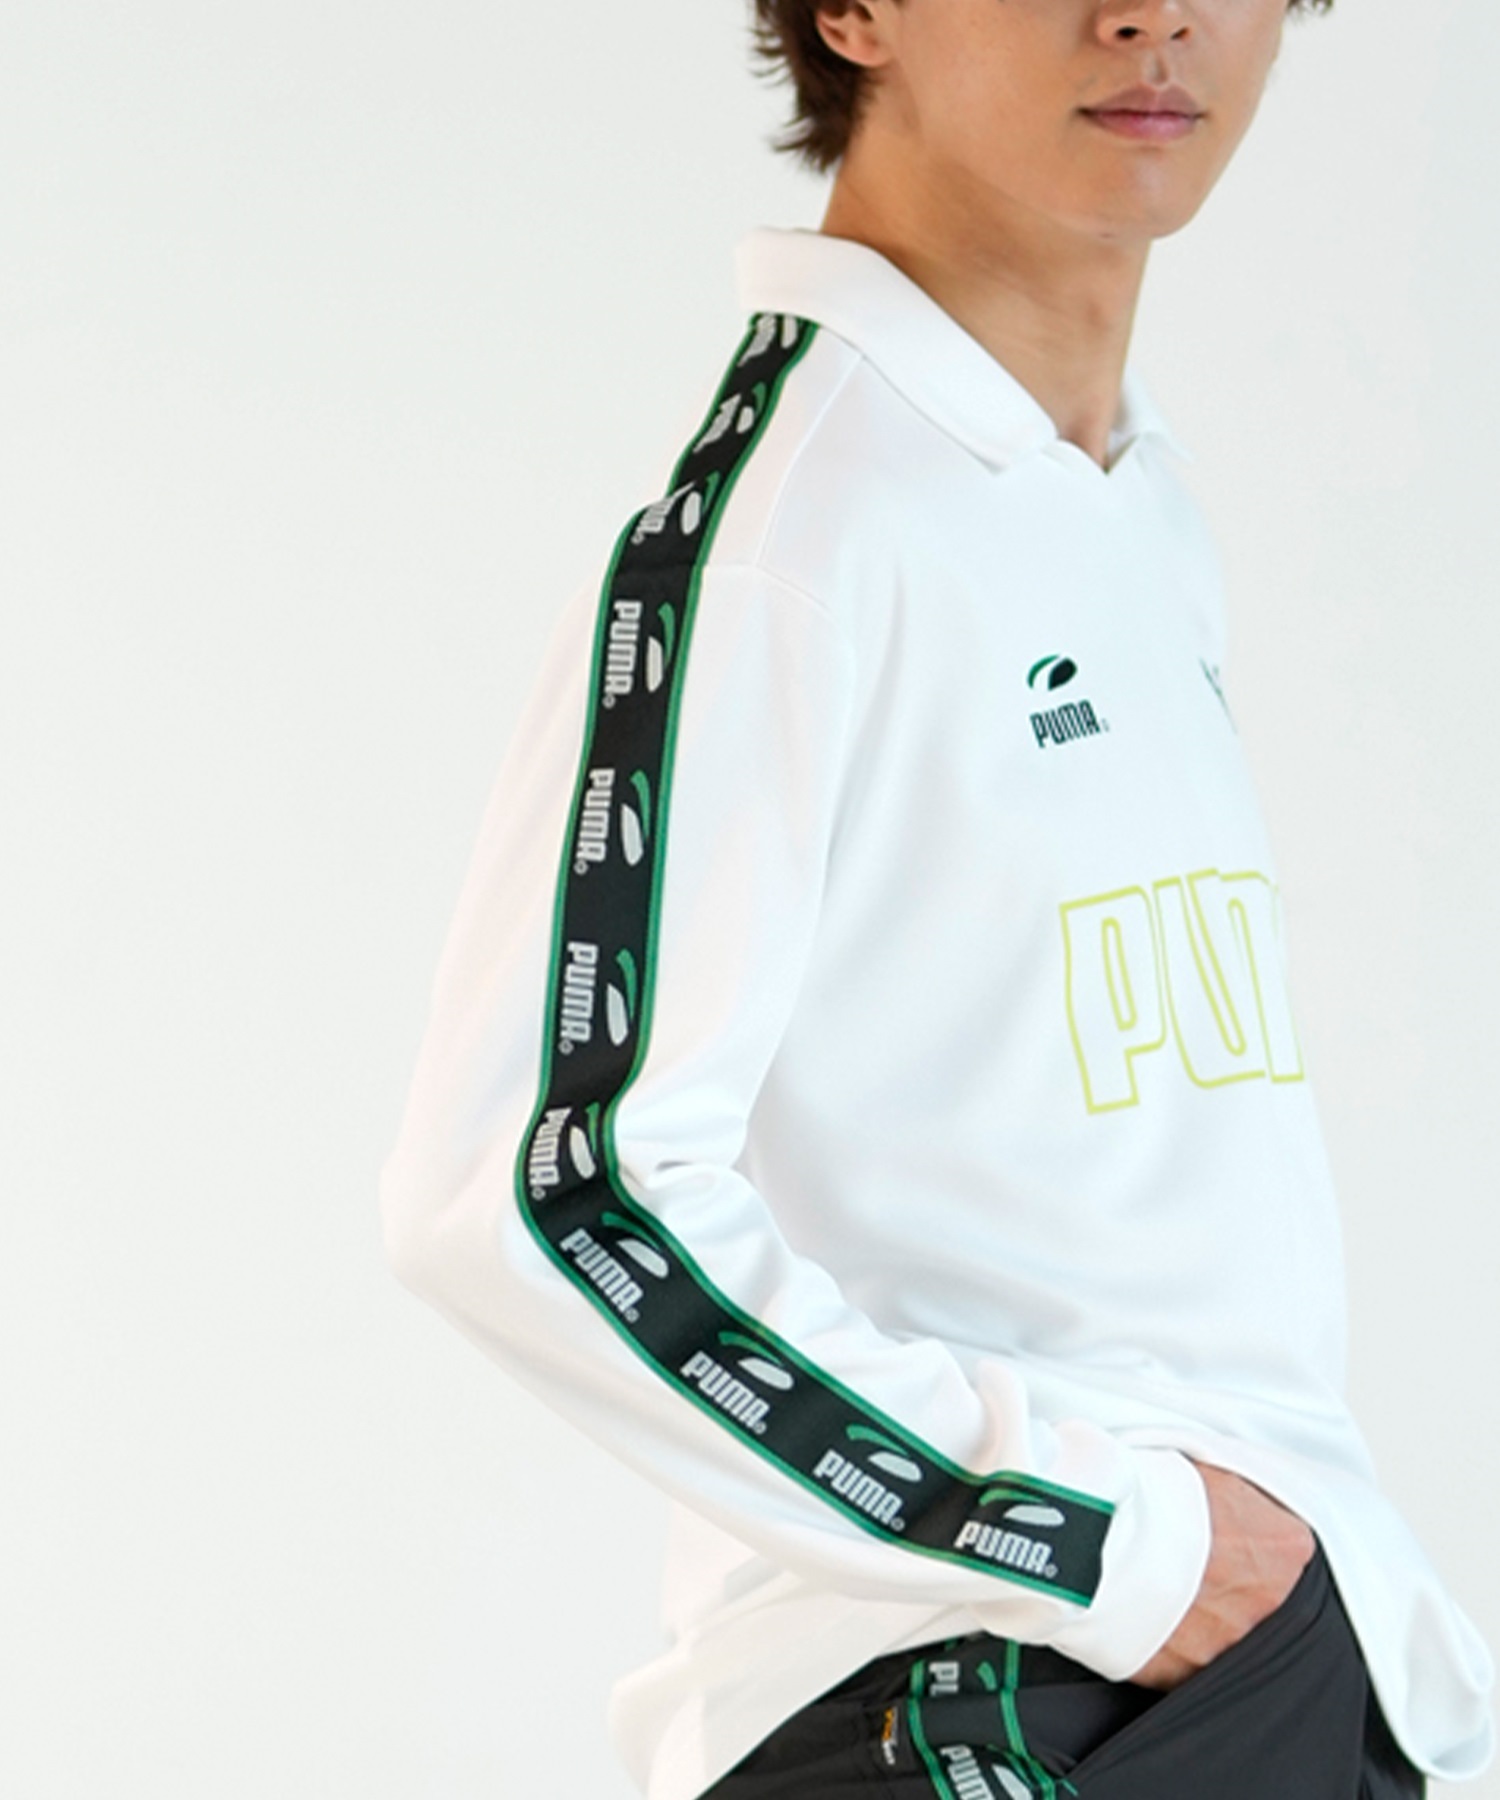 PUMA SKATEBOARDING プーマ スケートボーディング ゲームシャツ メンズ 長袖 Tシャツ ルーズシルエット 625691(01-M)